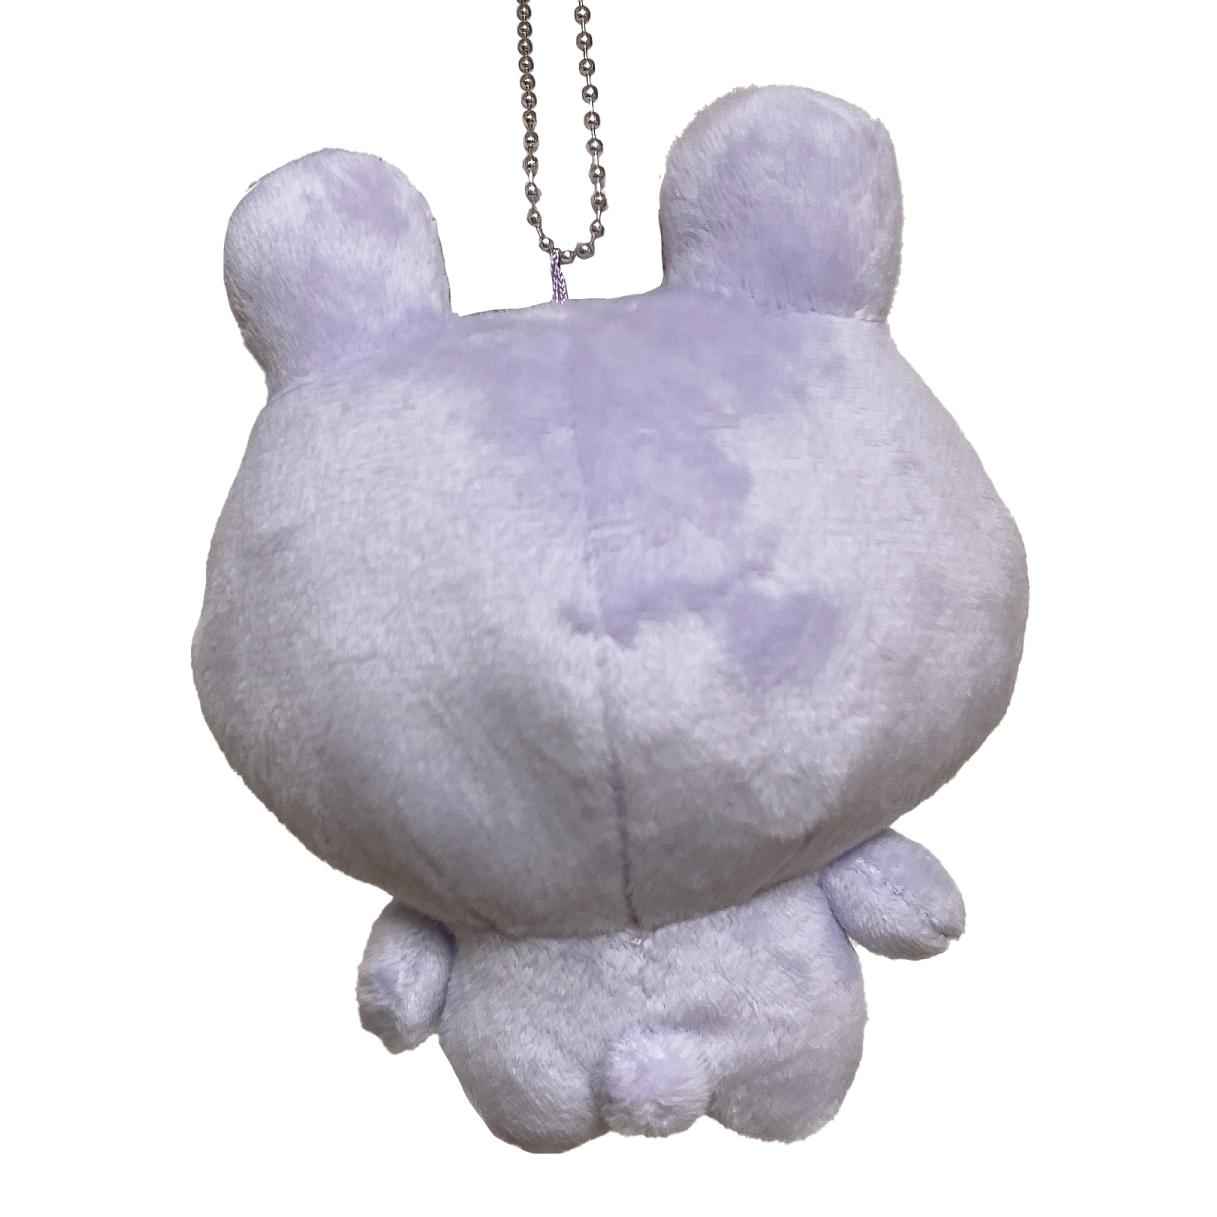 [Asamimi-chan] Anemi-chan stuffed toy key chain (ANEMIMI HAPPY BIRTHDAY🐰💜)